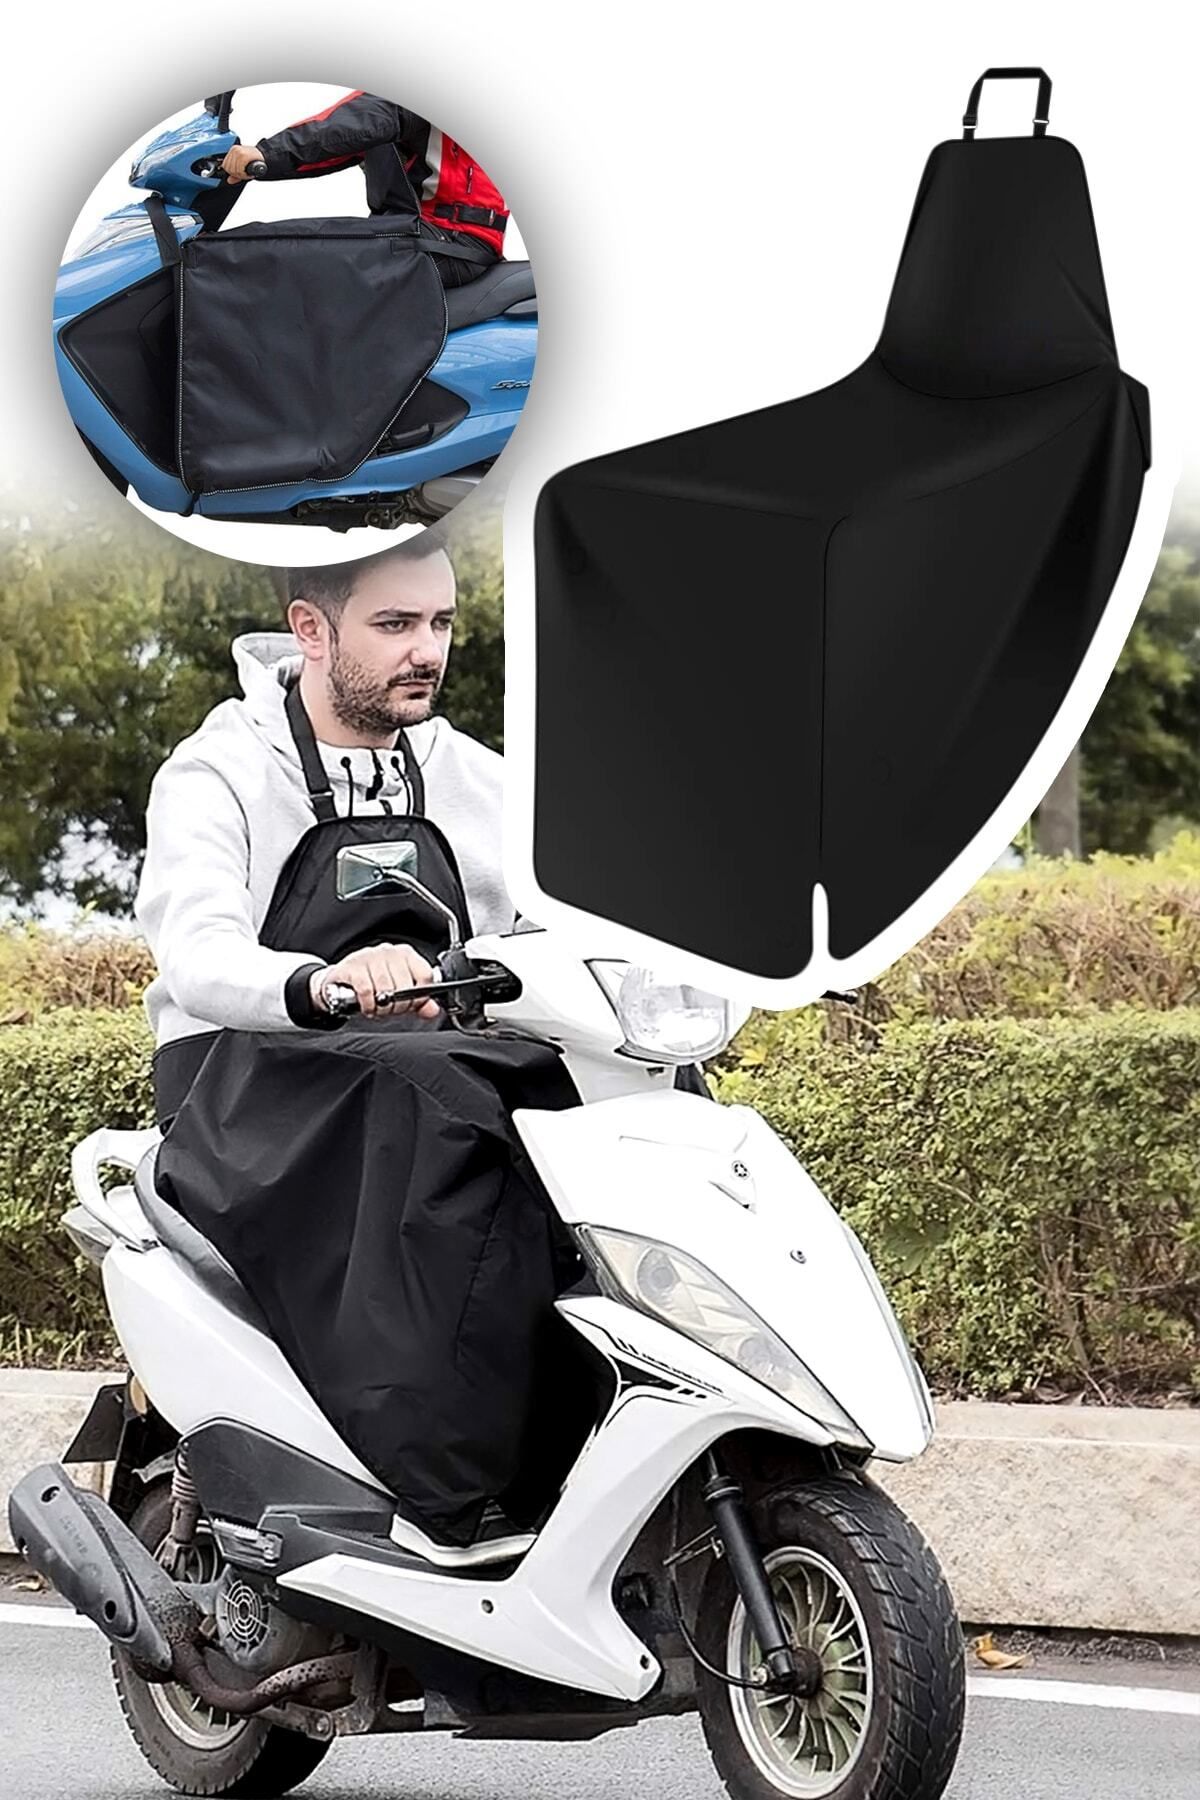 Bundeba Scooter Diz Koruma Örtüsü Motorsiklet Dizlik Yağmur Soğuk Rüzgar Önleyici Rüzgarlık Vücut Koruma